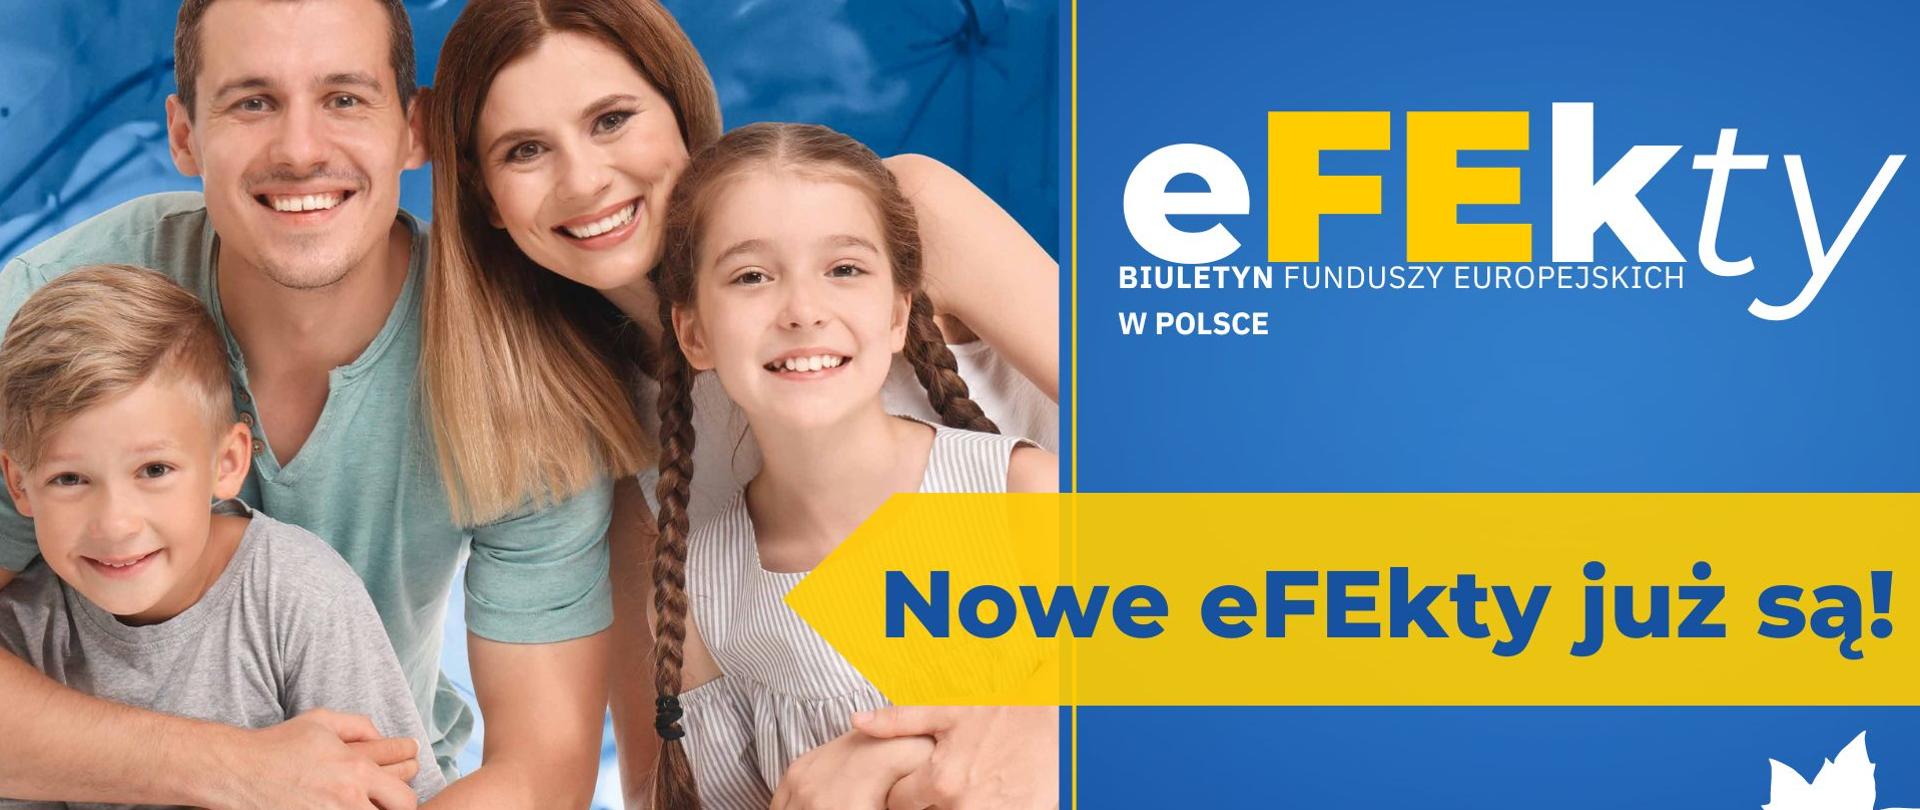 Na okładce czasopisma zdjęcie dwójki dorosłych i dziewczynki i chłopca. Obok napis: "eFEkty Biuletyn Funduszy Europejskich w Polsce Nowe eFEkty już są?"